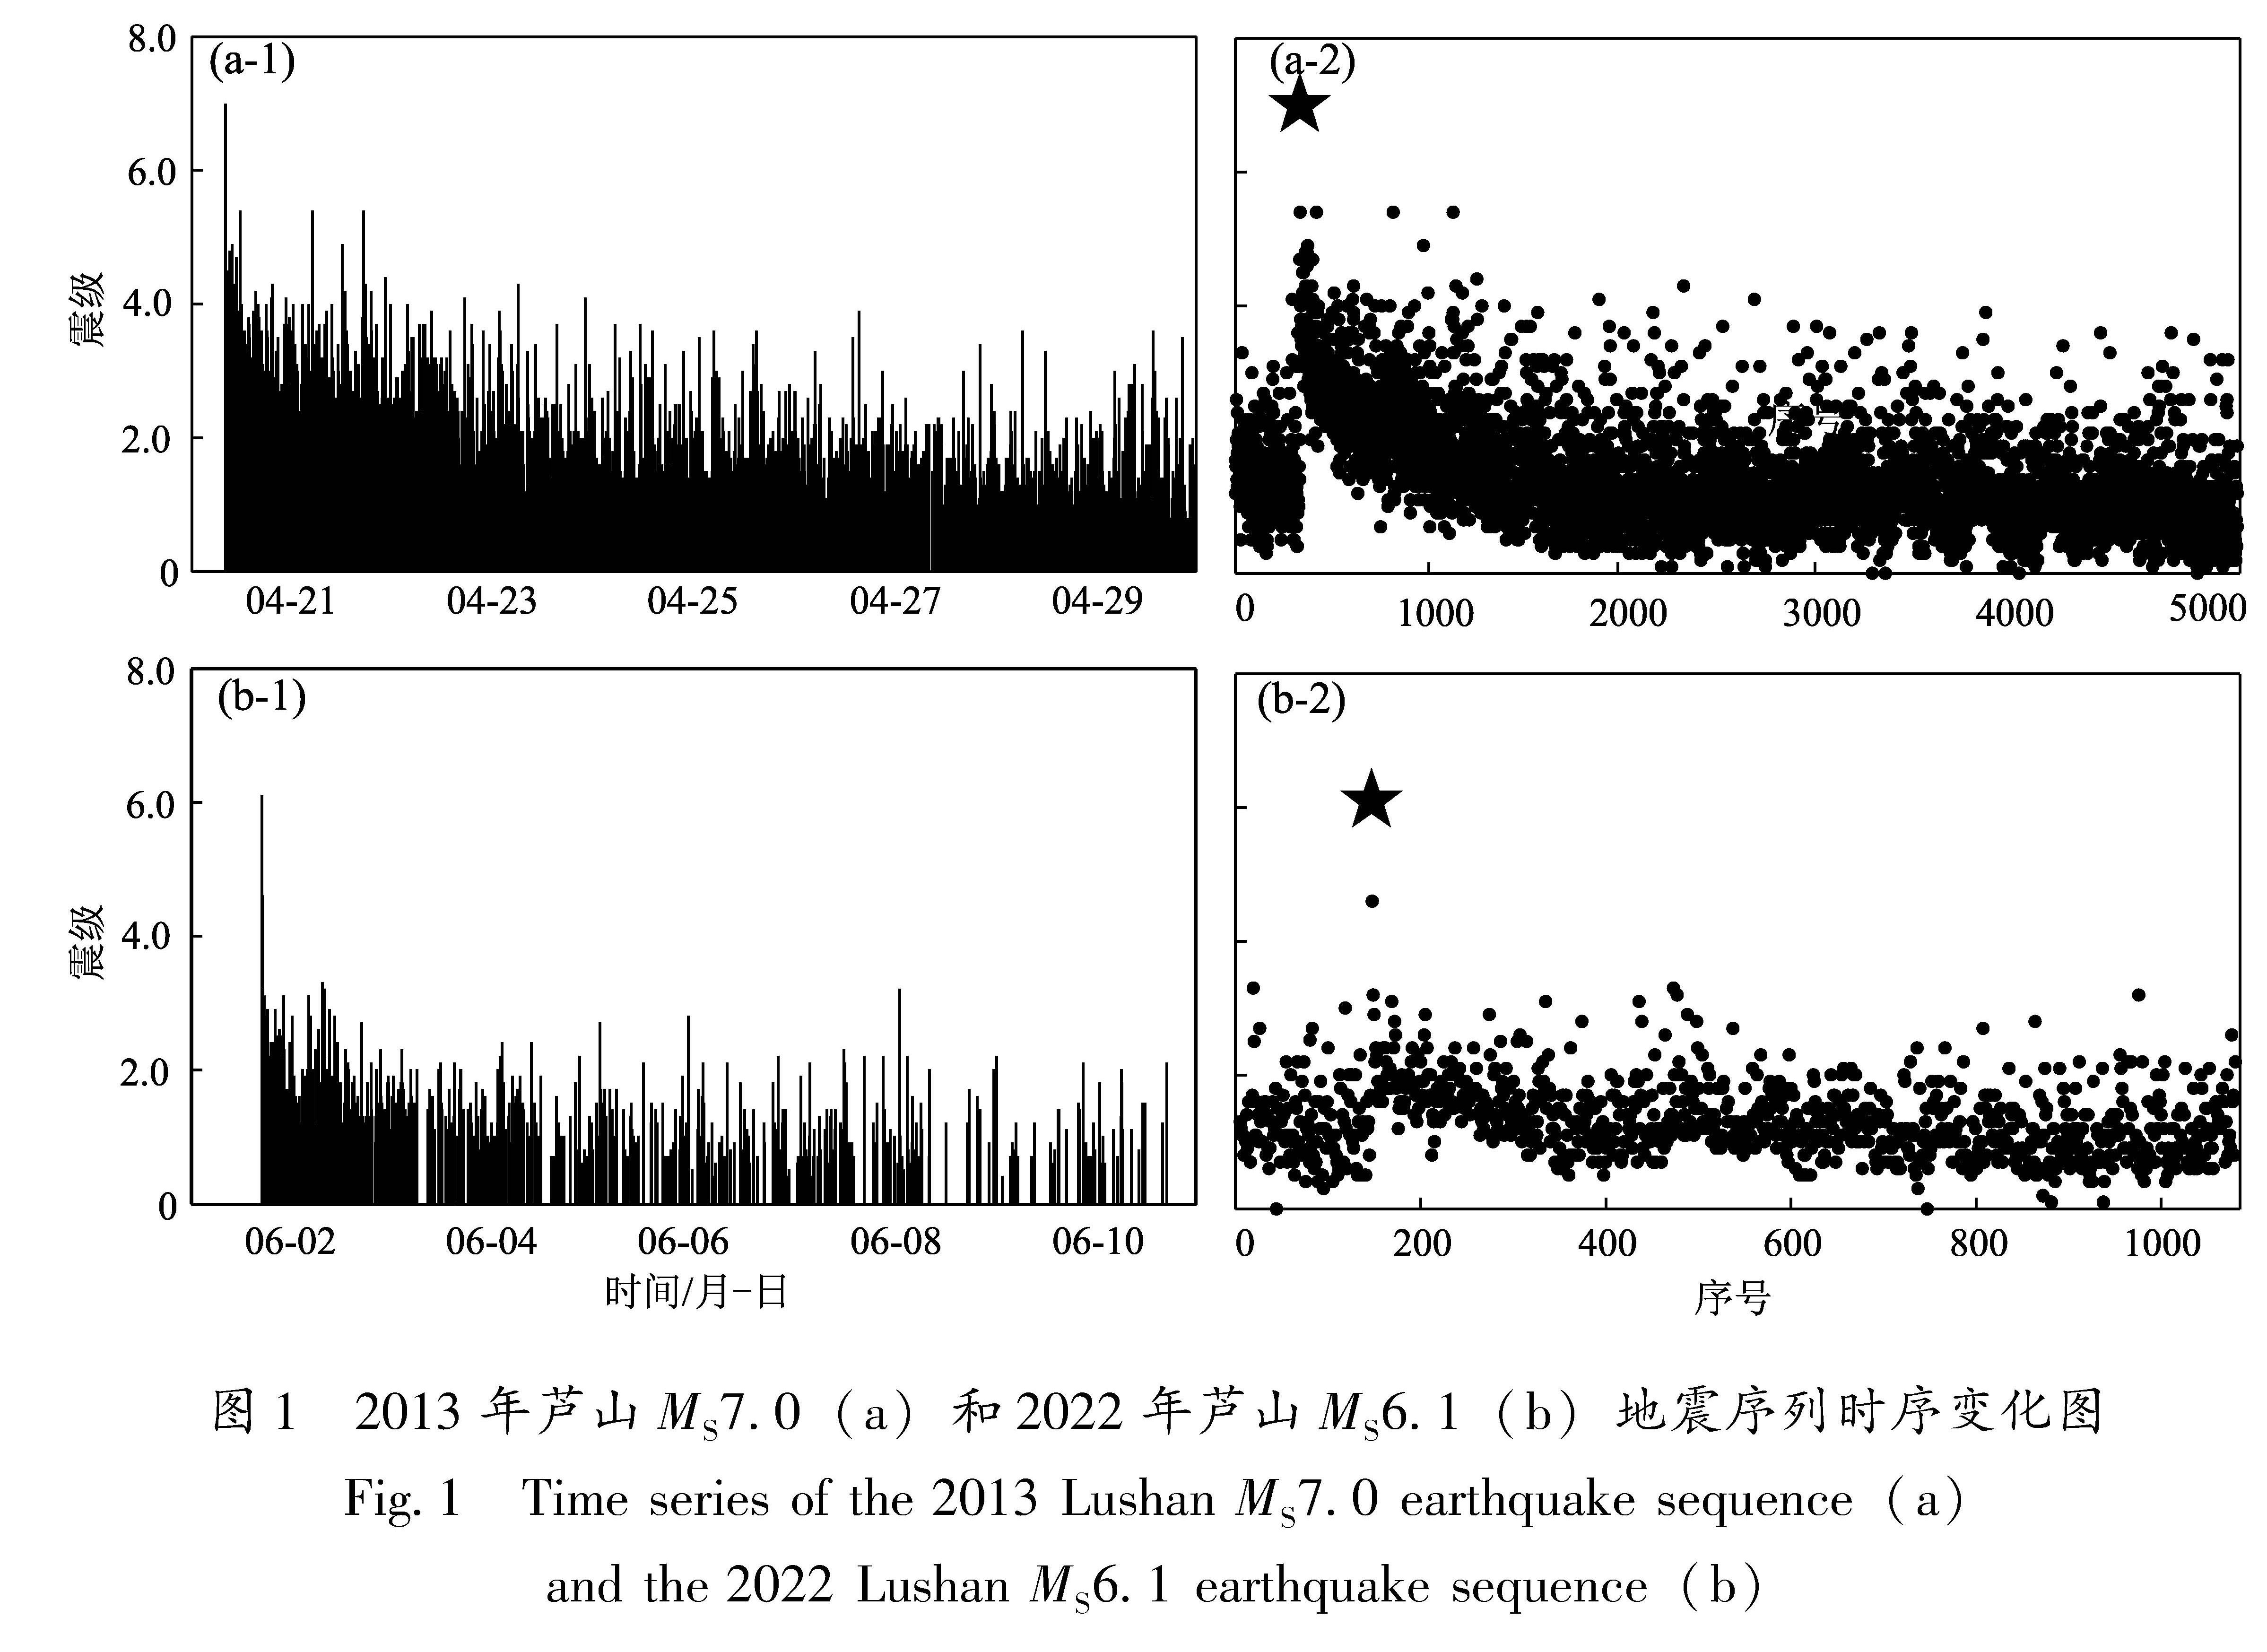 图1 2013年芦山MS7.0(a)和2022年芦山MS6.1(b)地震序列时序变化图<br/>Fig.1 Time series of the 2013 Lushan MS7.0 earthquake sequence(a) and the 2022 Lushan MS6.1 earthquake sequence(b)